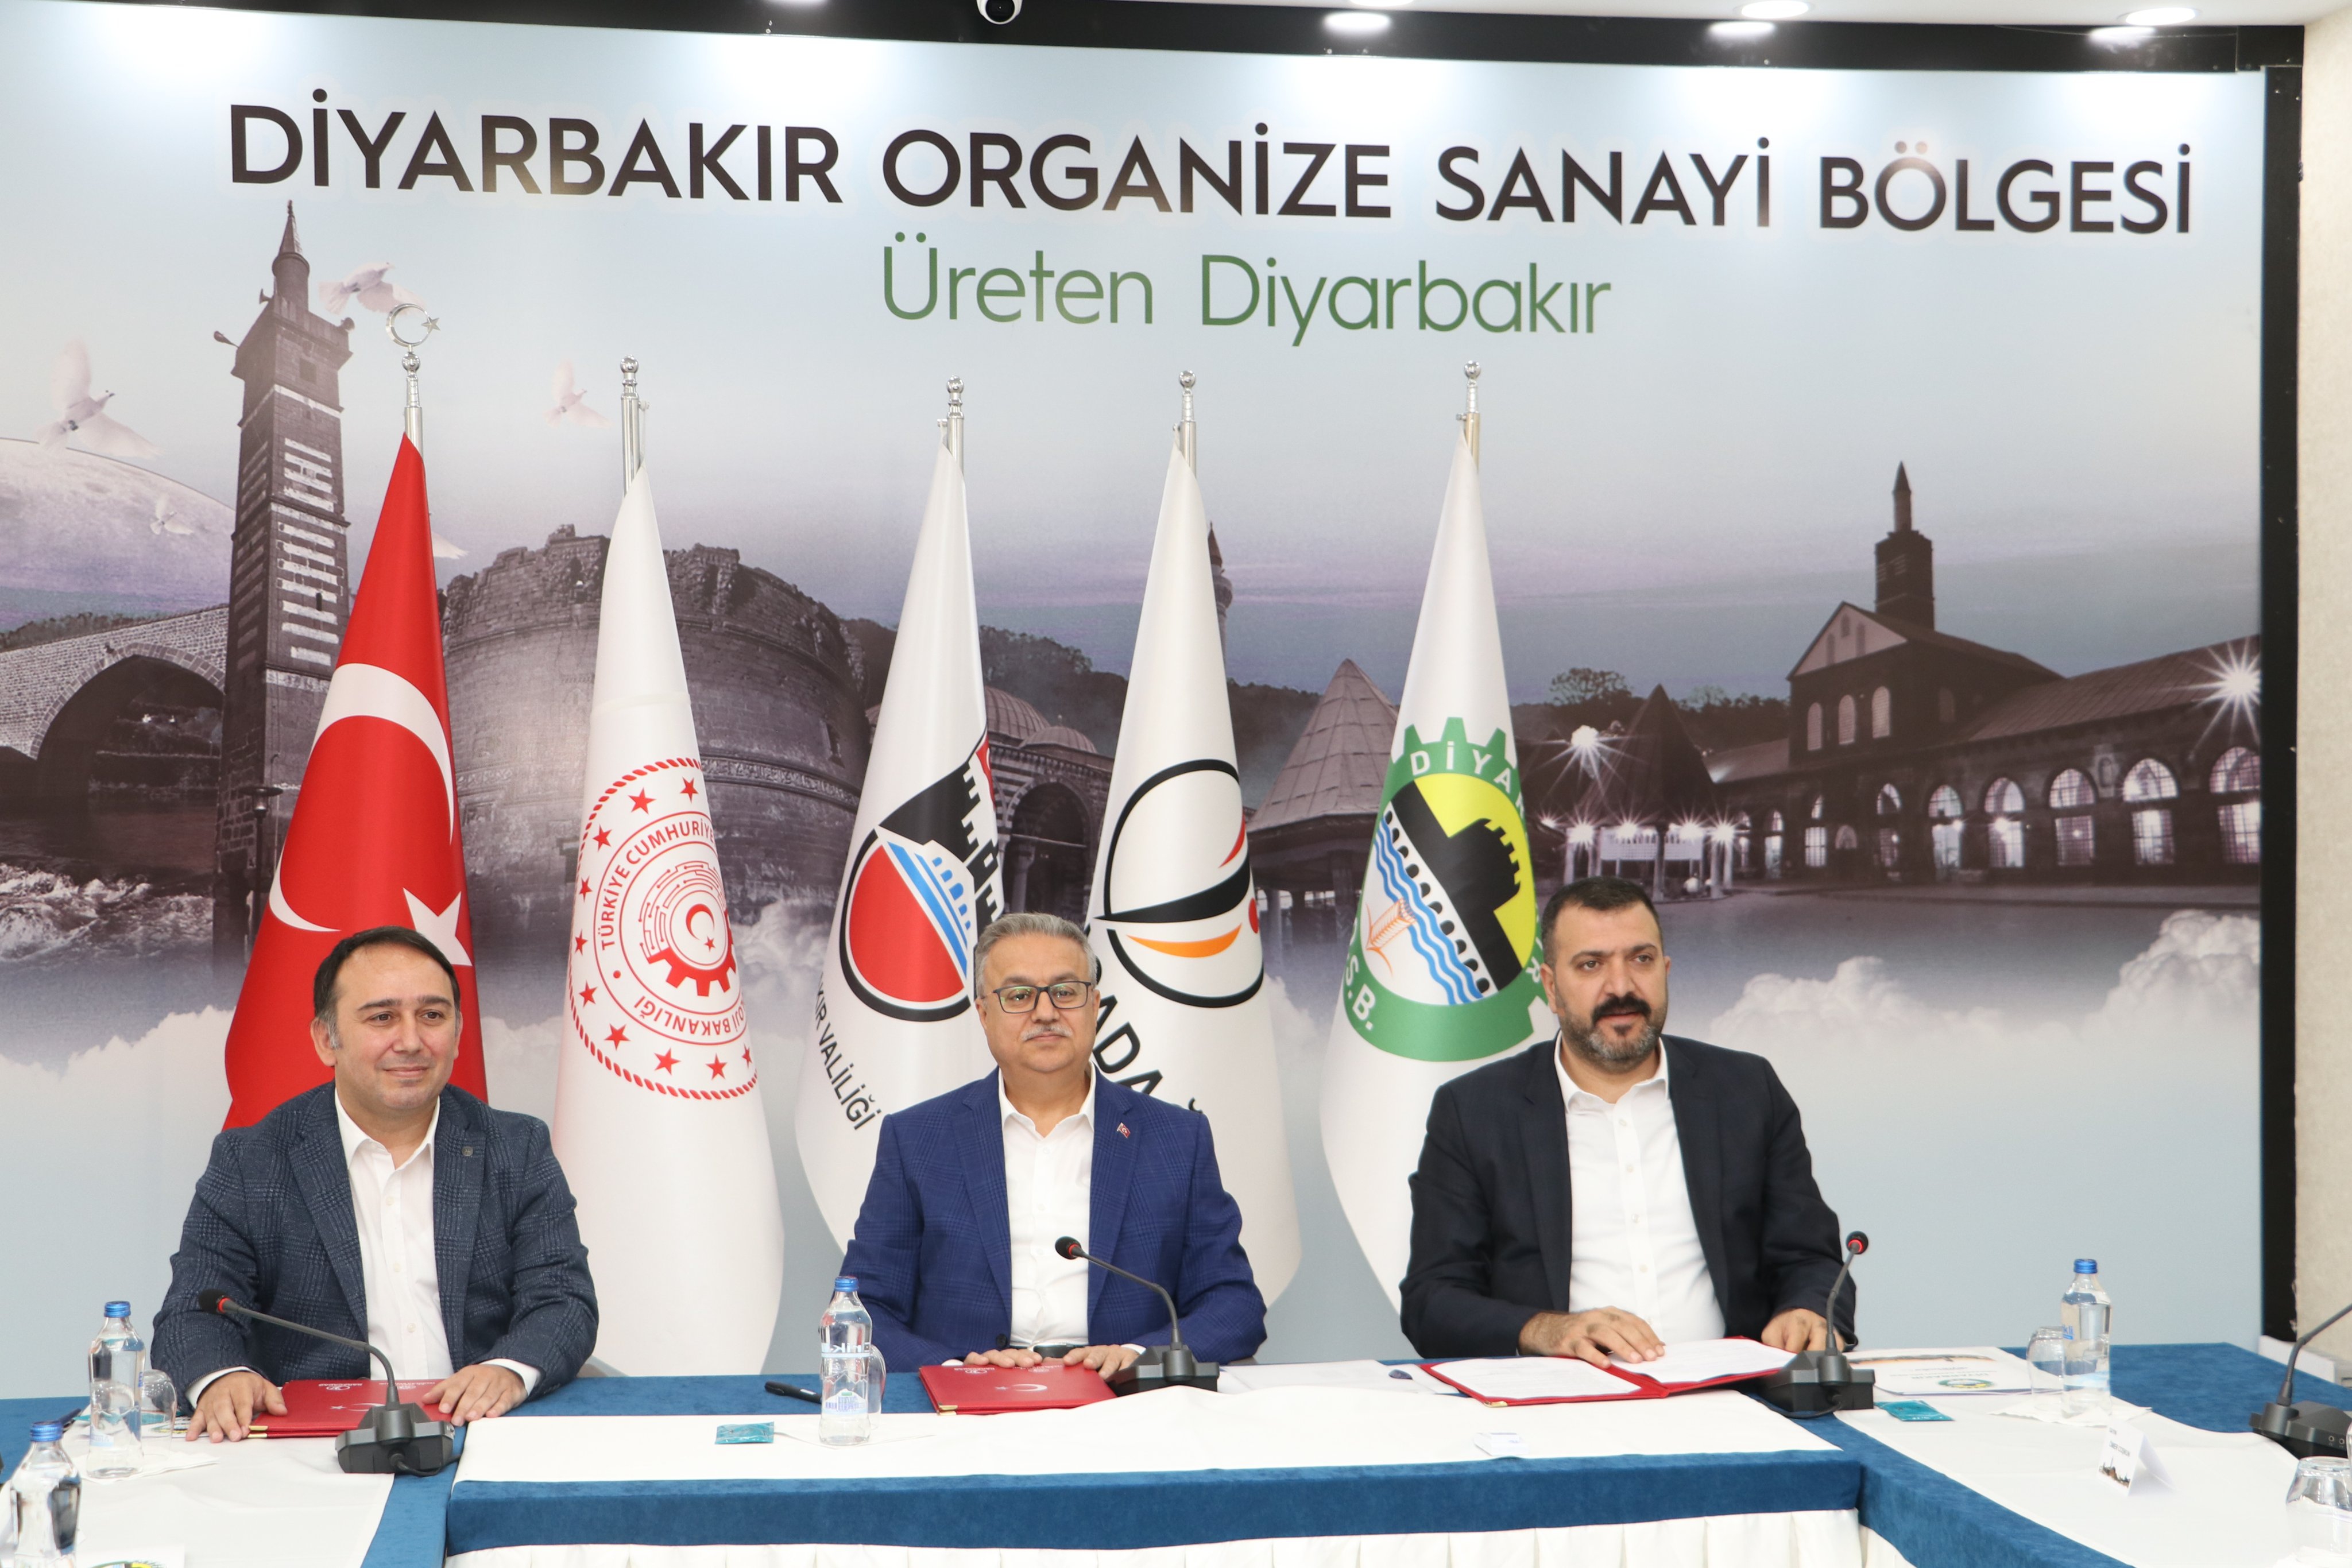 Diyarbakır Organize Sanayi Bölgesi'nde 84 milyon TL'ye mal olacak 18 adet işlik projesinin  İmza töreni gerçekleşti.